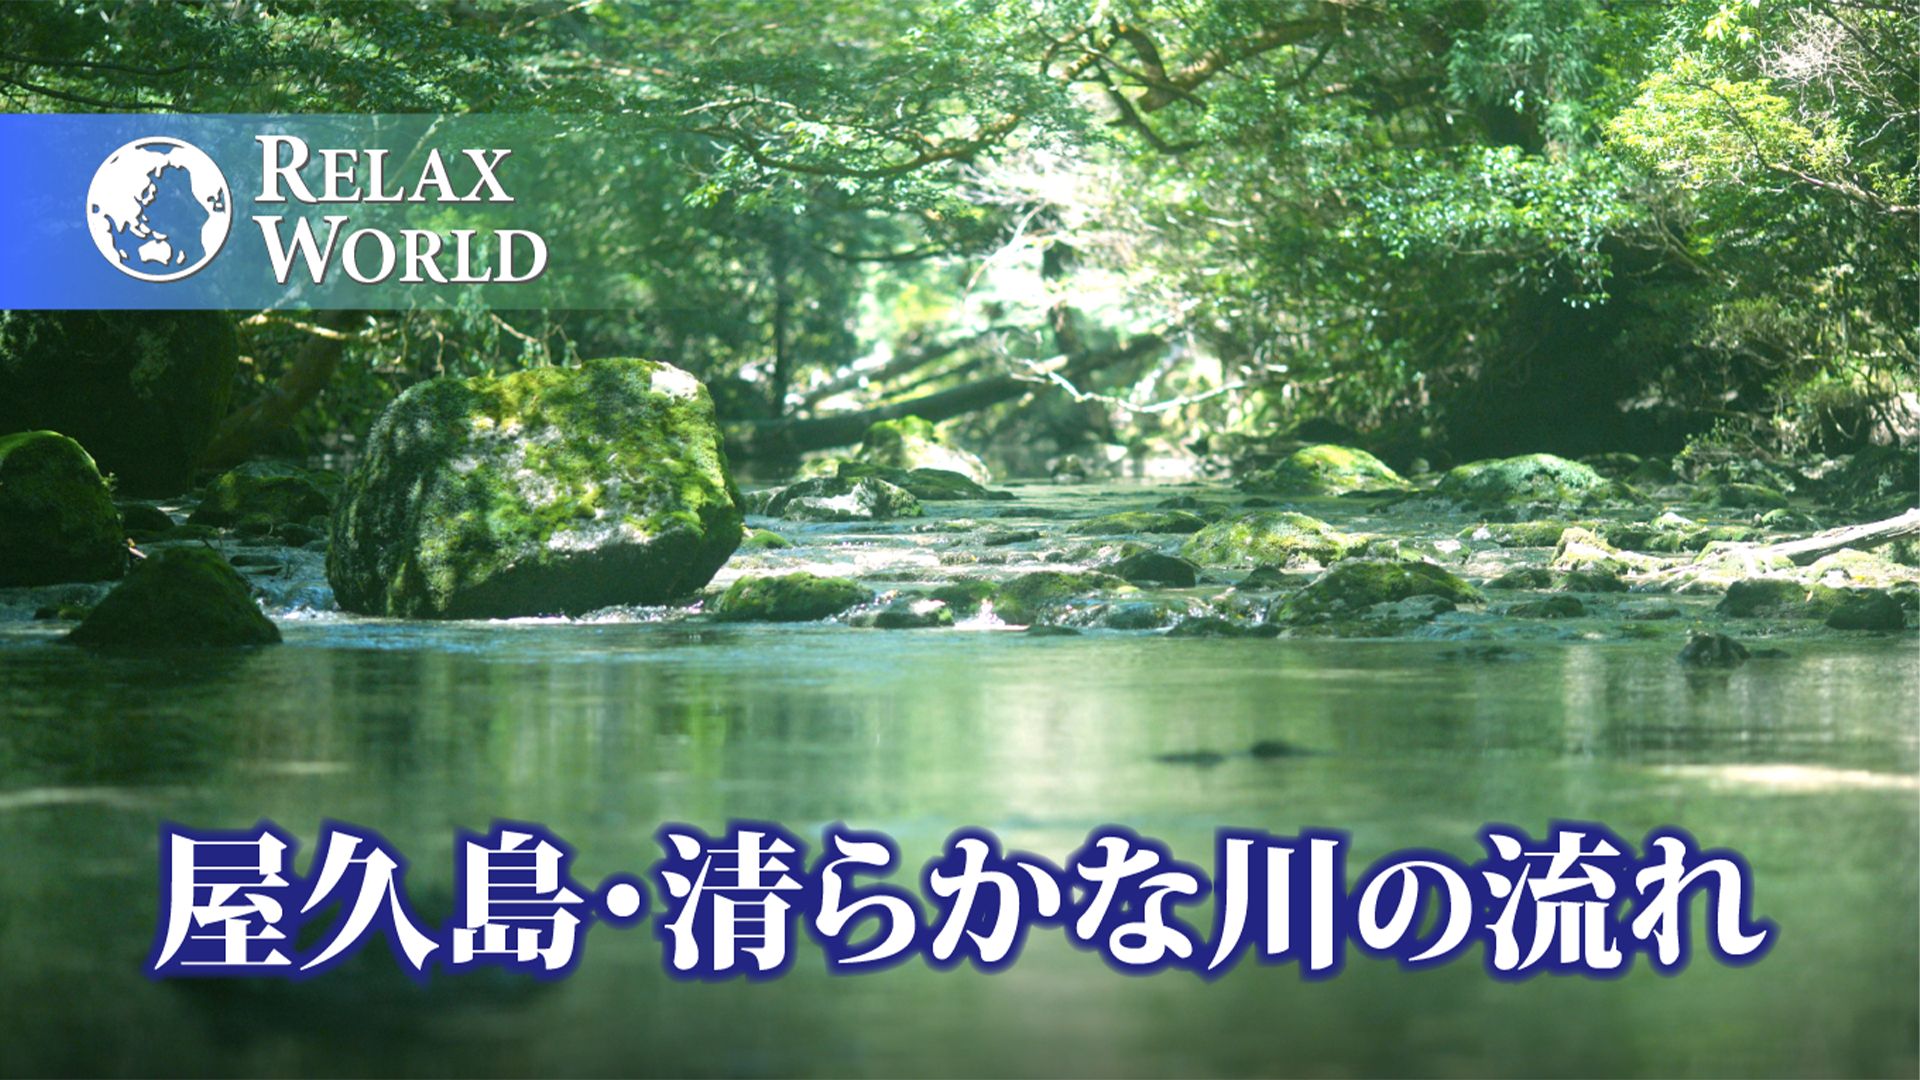 屋久島・清らかな川の流れ【RELAX WORLD】